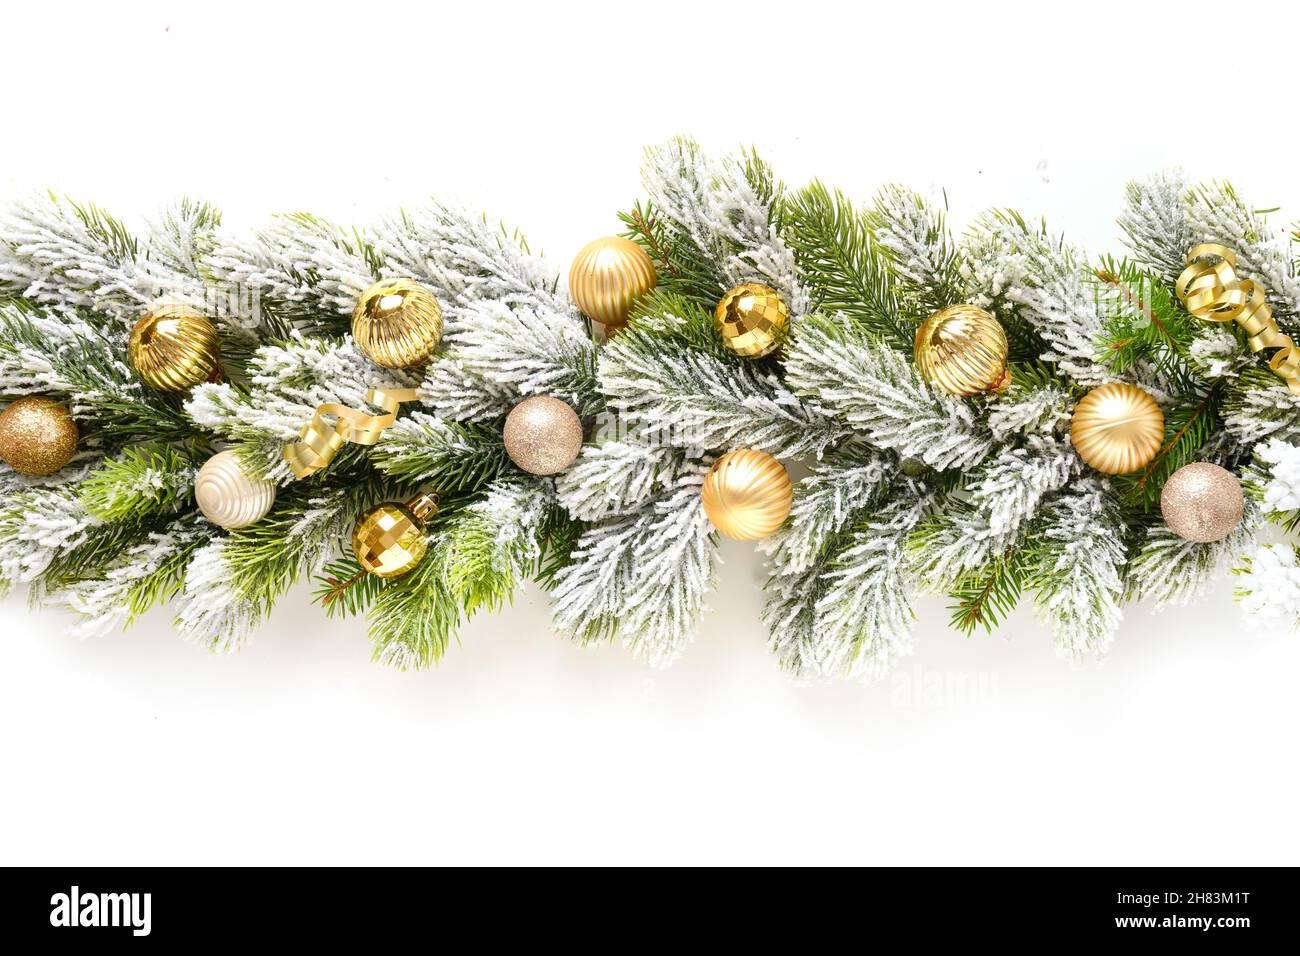 Bannière de Noël avec boules d'or en rangée sur des branches de sapin vert éternel enneigées isolées sur fond blanc.Grande taille. Banque D'Images